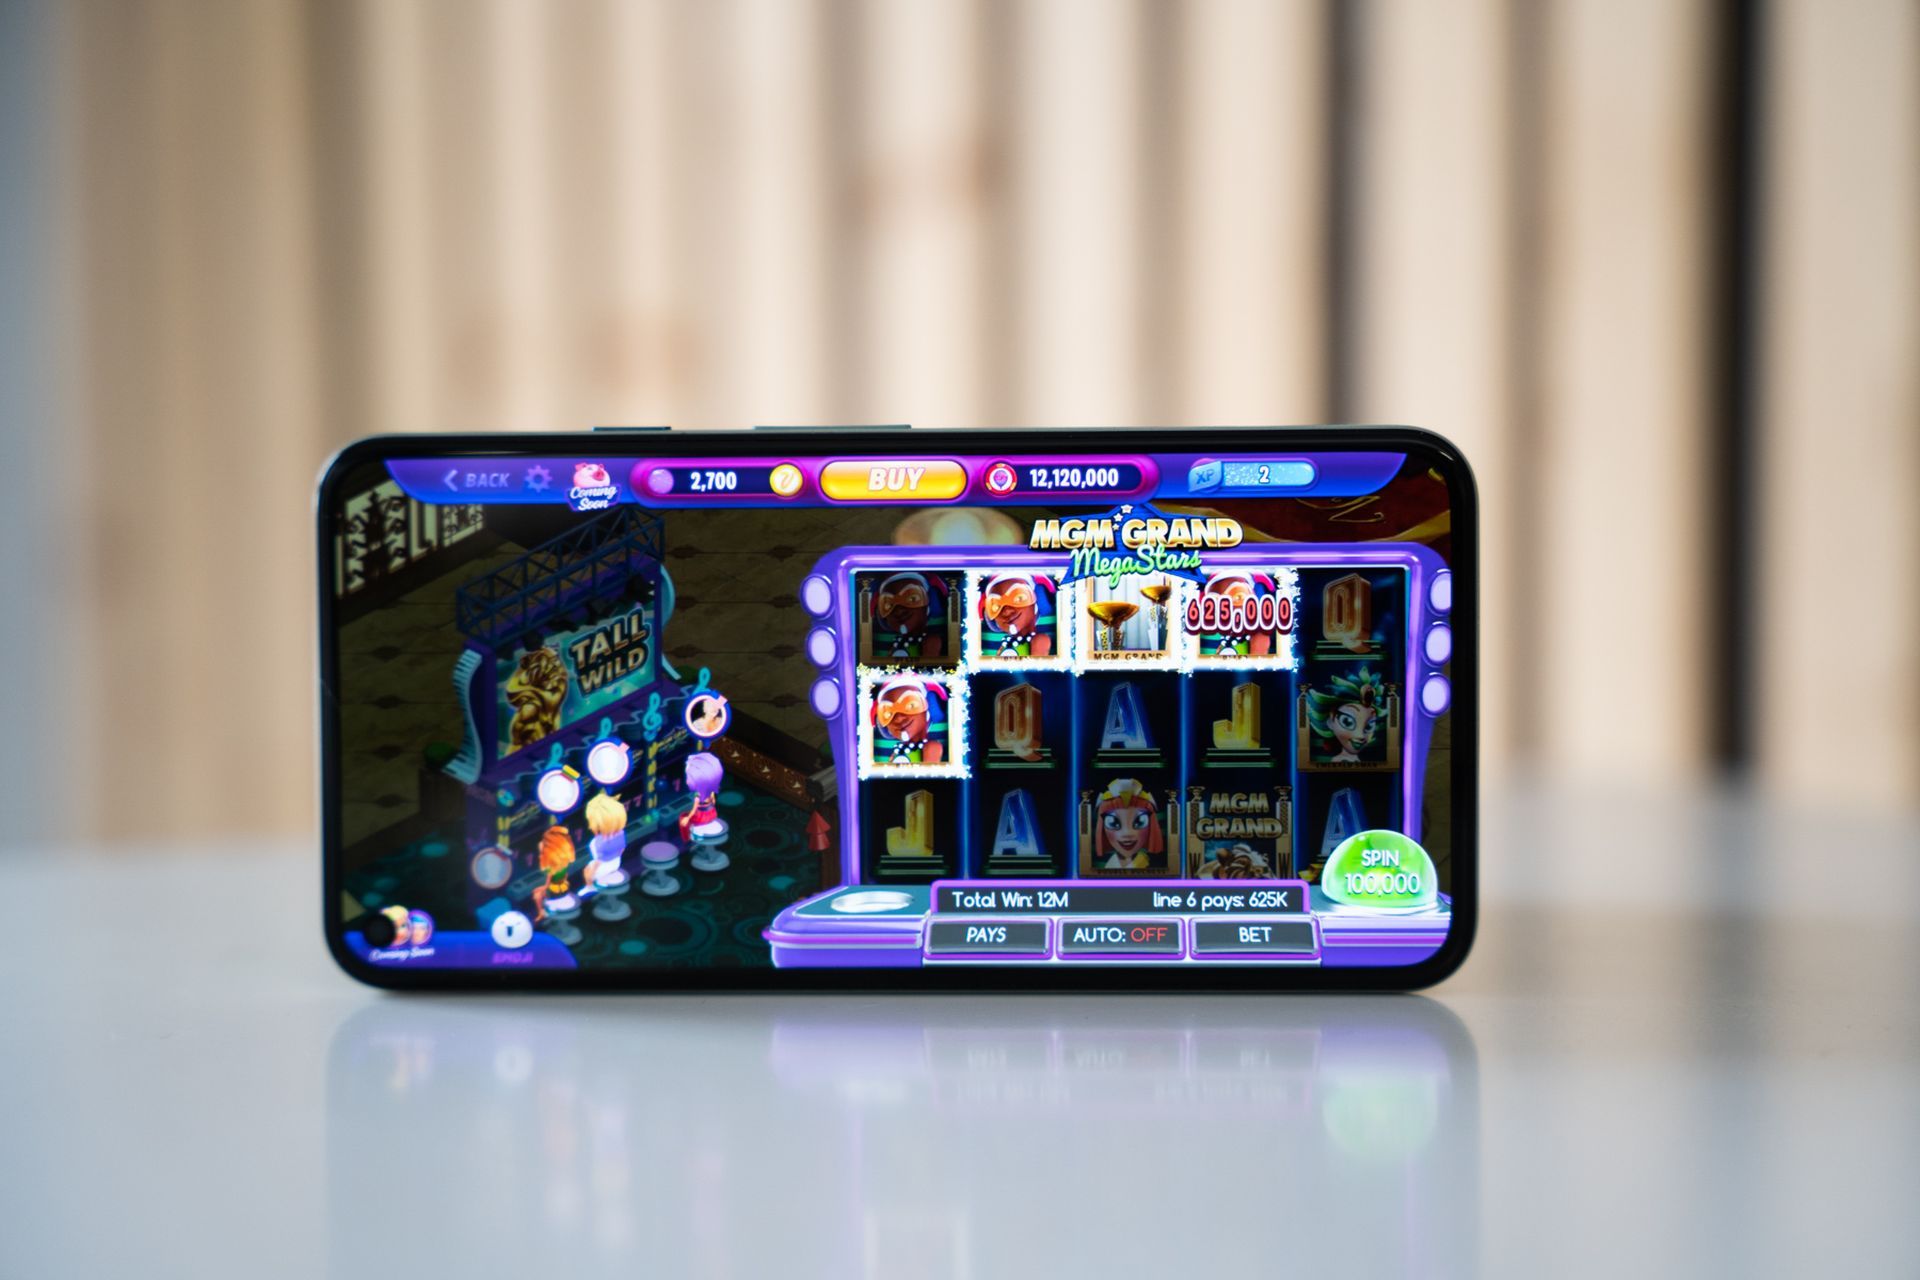 Mobile Apps und Casinos: Die Rolle der Technologie beim bequemen Zugang zu Online-Unterhaltung